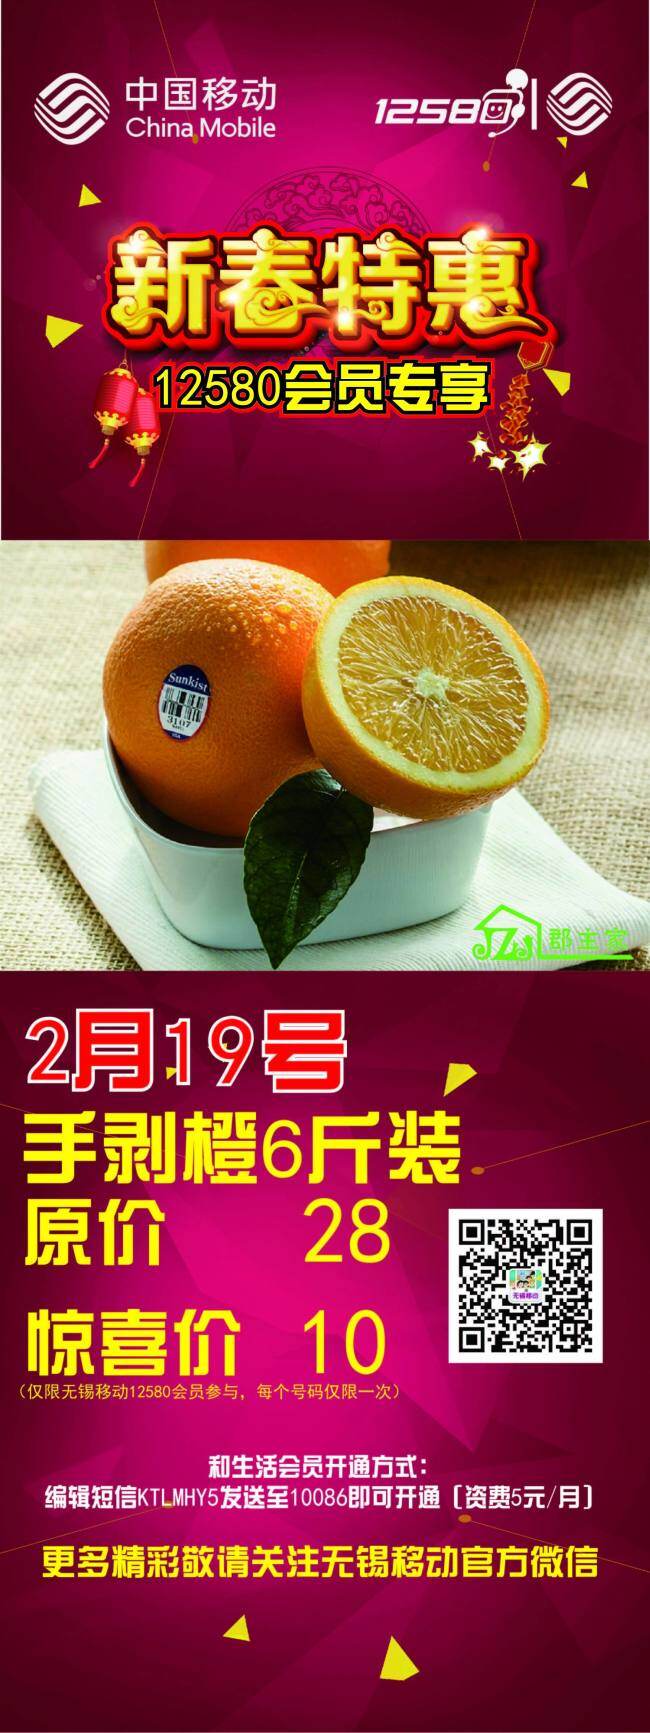 水果促销 x展架 海报 中国移动 促销 原创 特惠 会员专享 红色